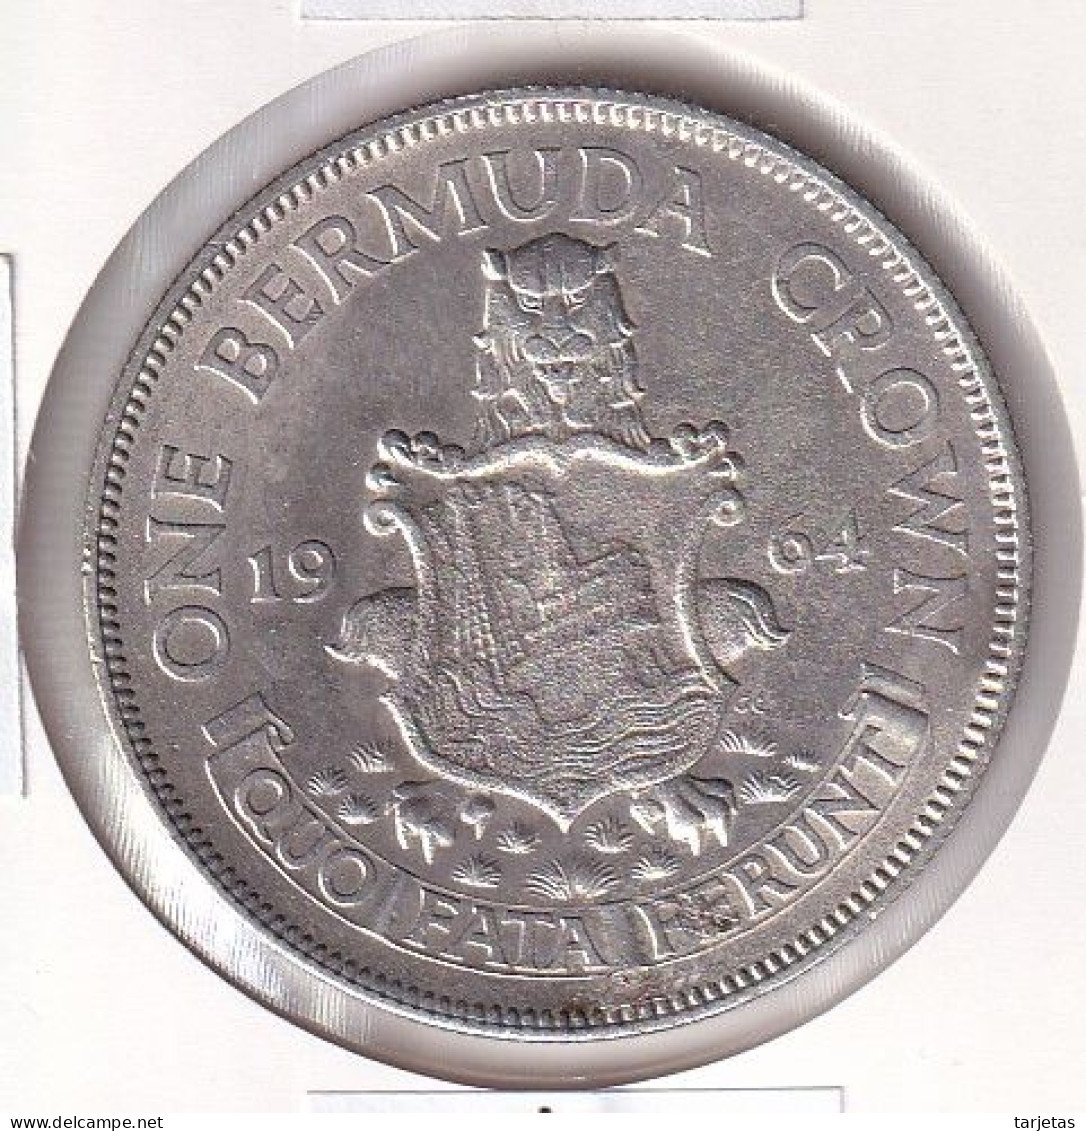 MONEDA DE PLATA DE BERMUDAS DE 1 CROWN DEL AÑO 1964 (SILVER-ARGENT) - Bermudes